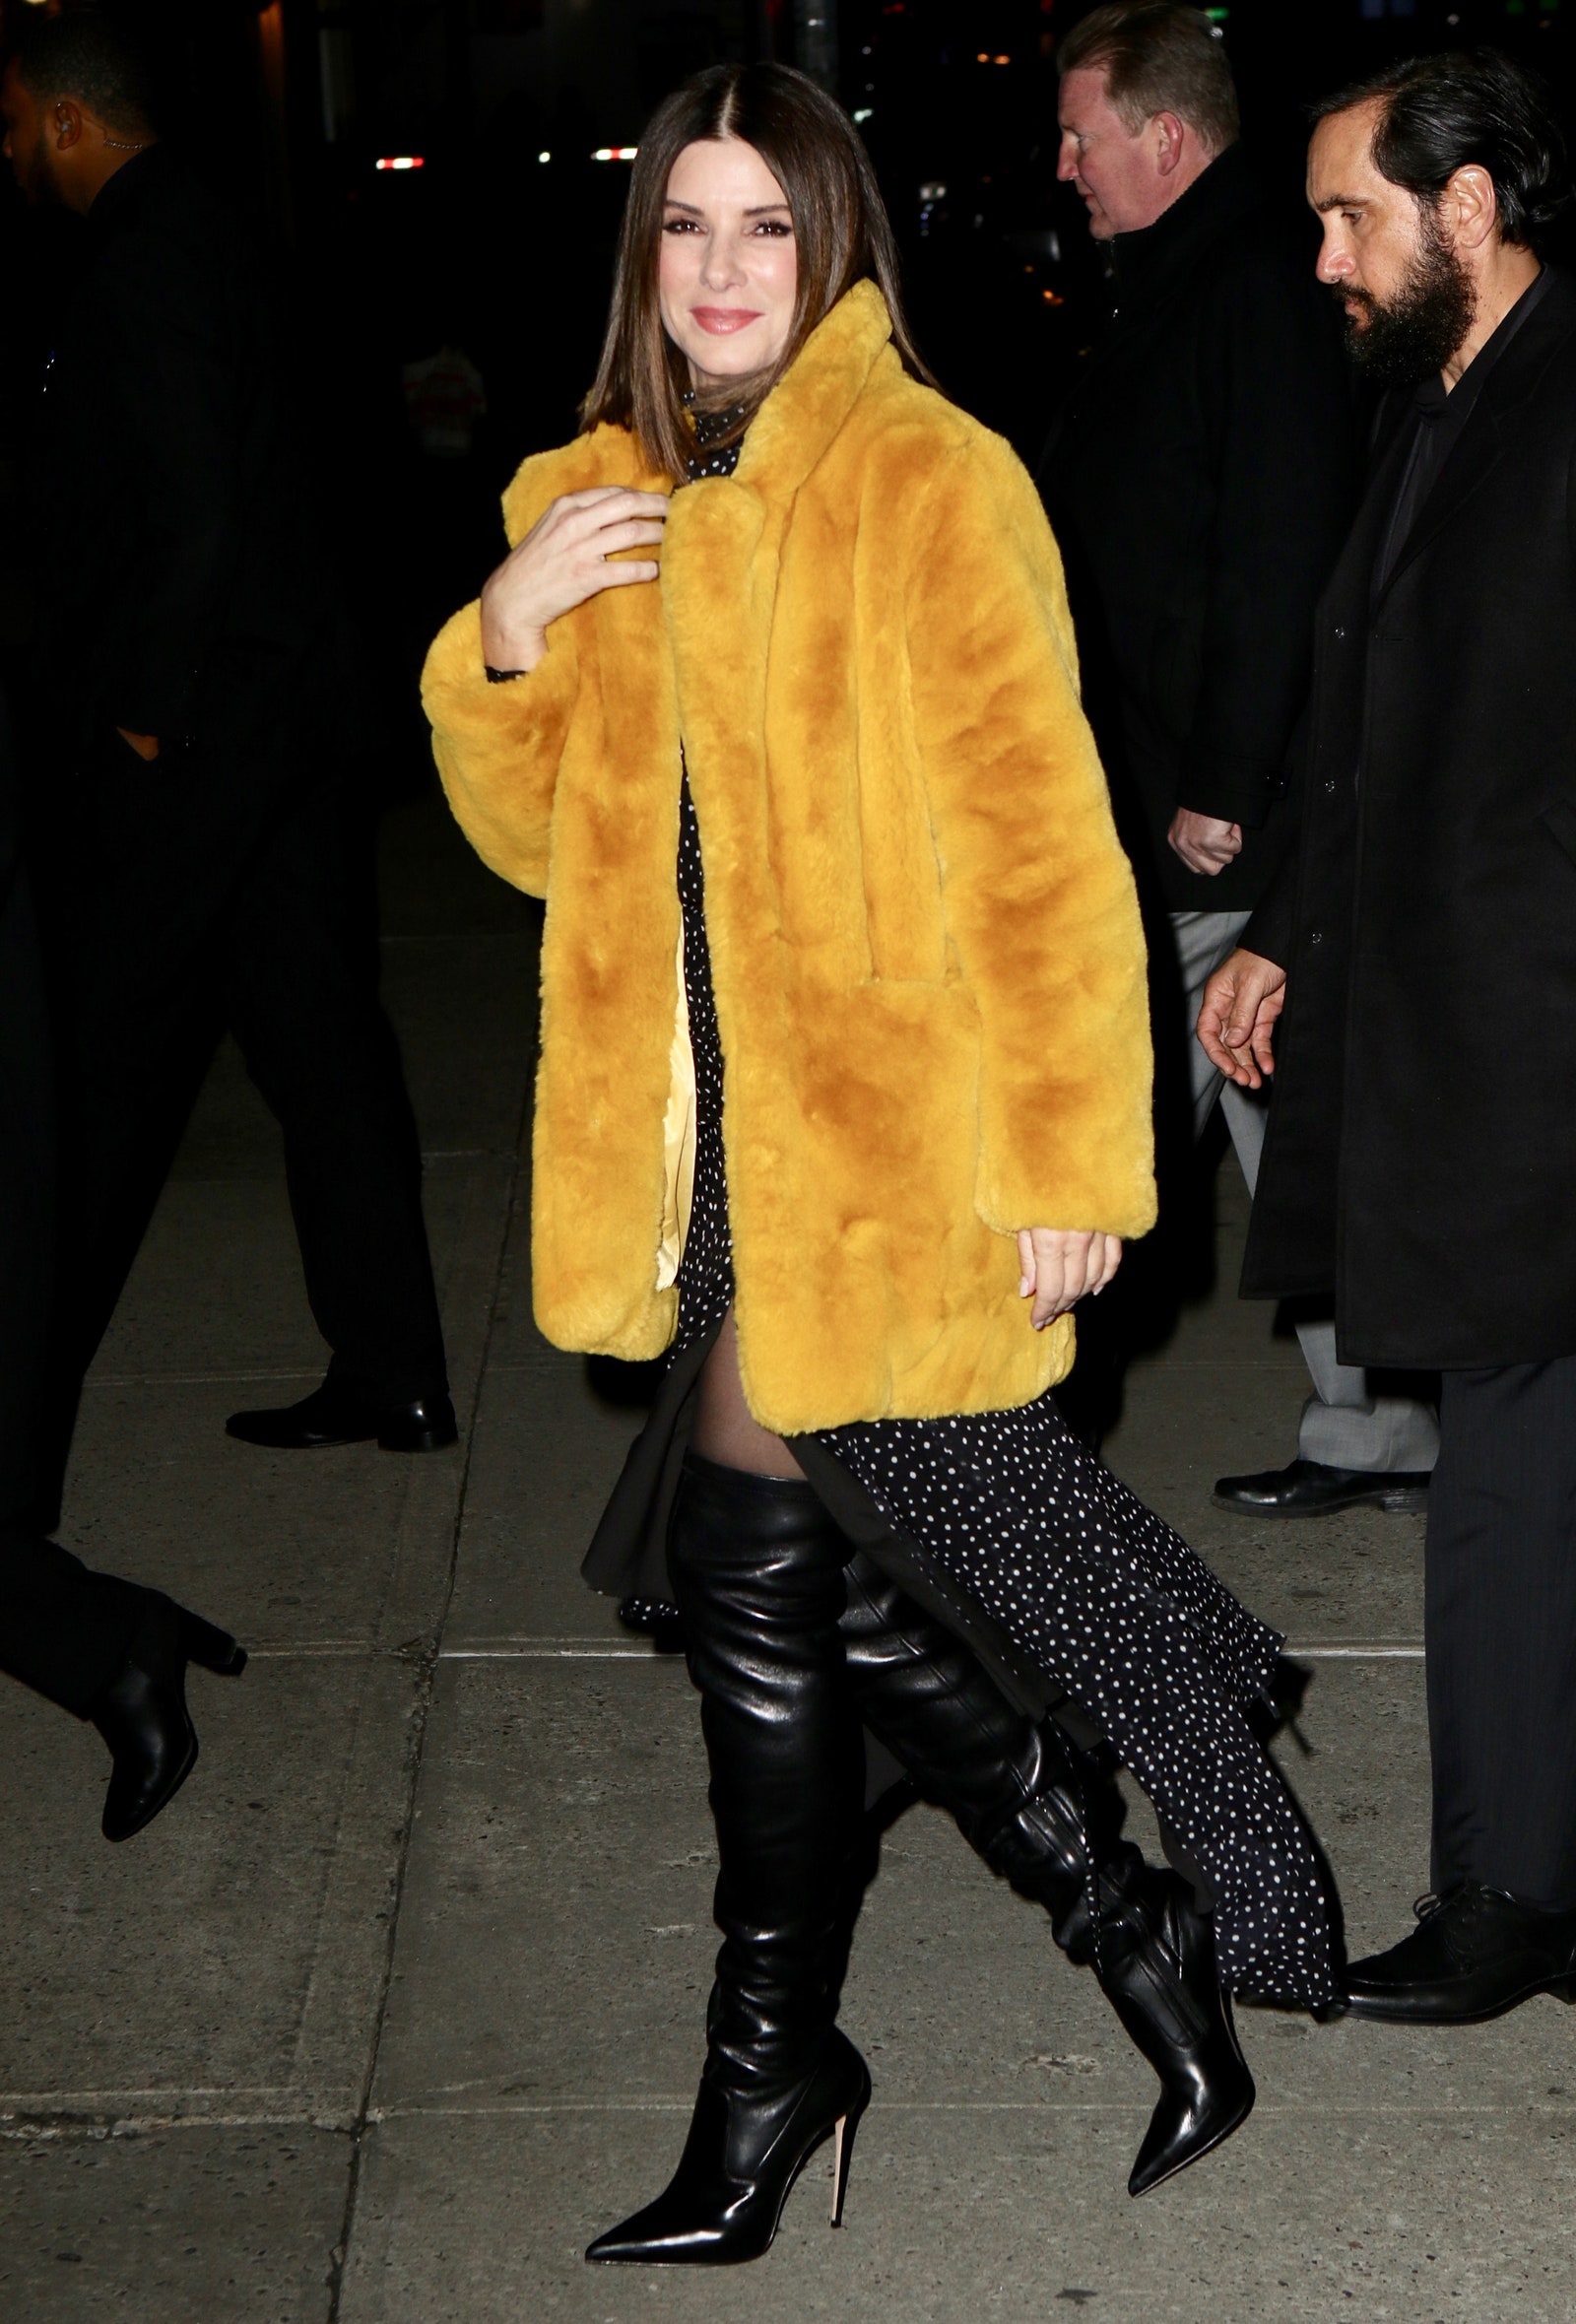 Sandra Bullock in NYC on December 17 2018.